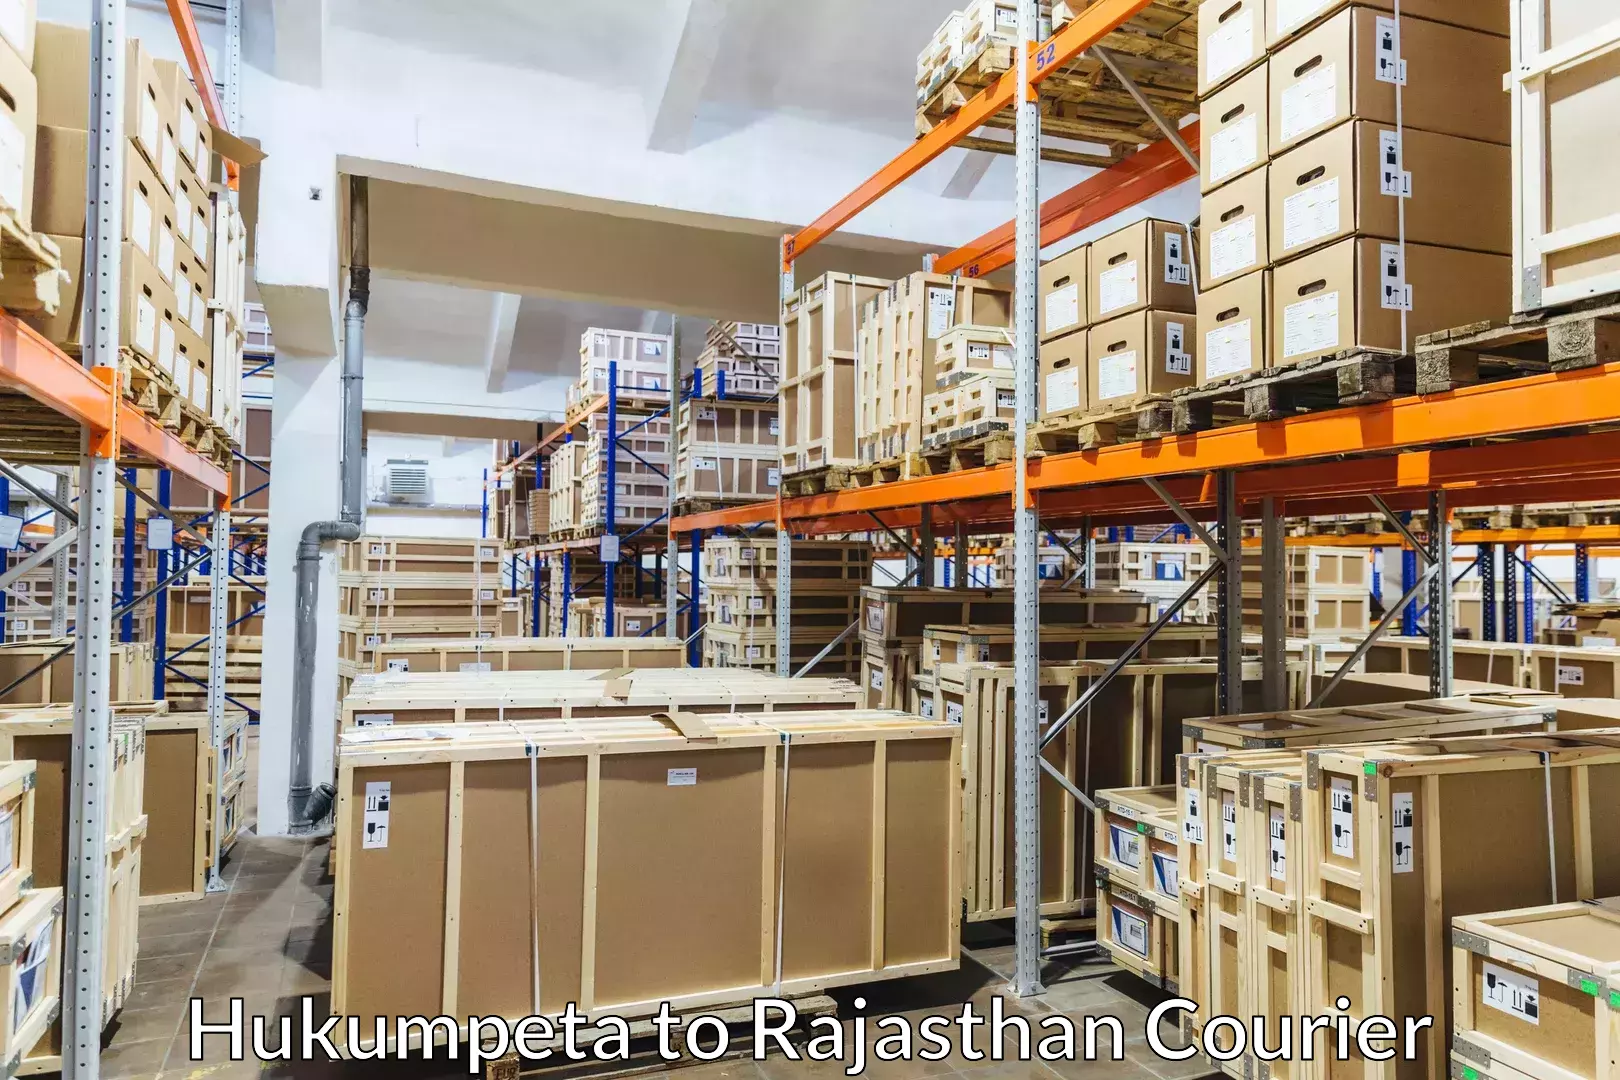 Furniture transport experts Hukumpeta to Rajasthan